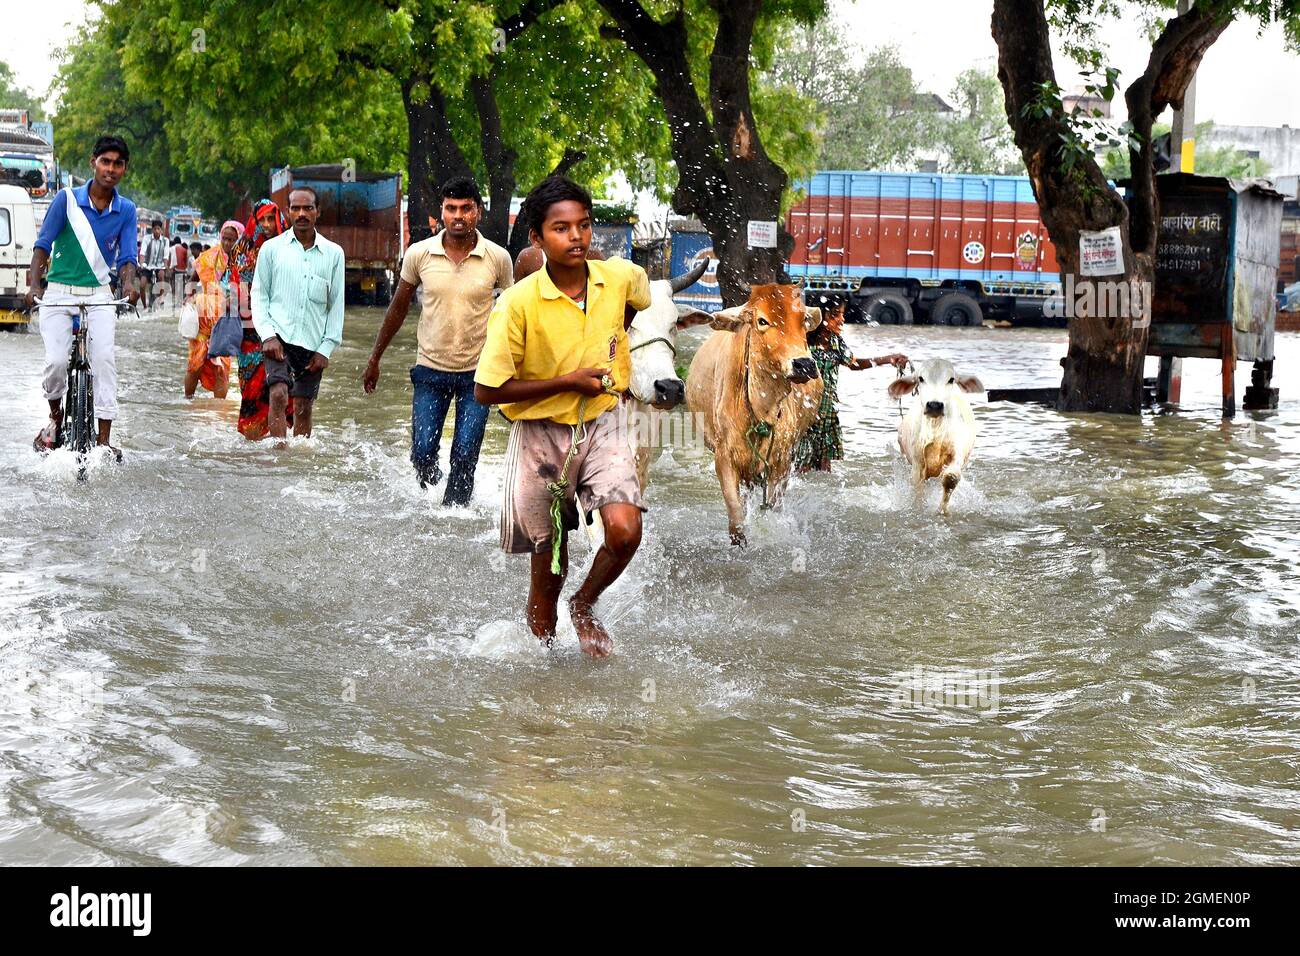 Le popolazioni rurali del villaggio della zona di alluvione stanno andando al posto sicuro per la sicurezza della loro vita e anche i loro animali domestici a Varanasi in India. Foto Stock